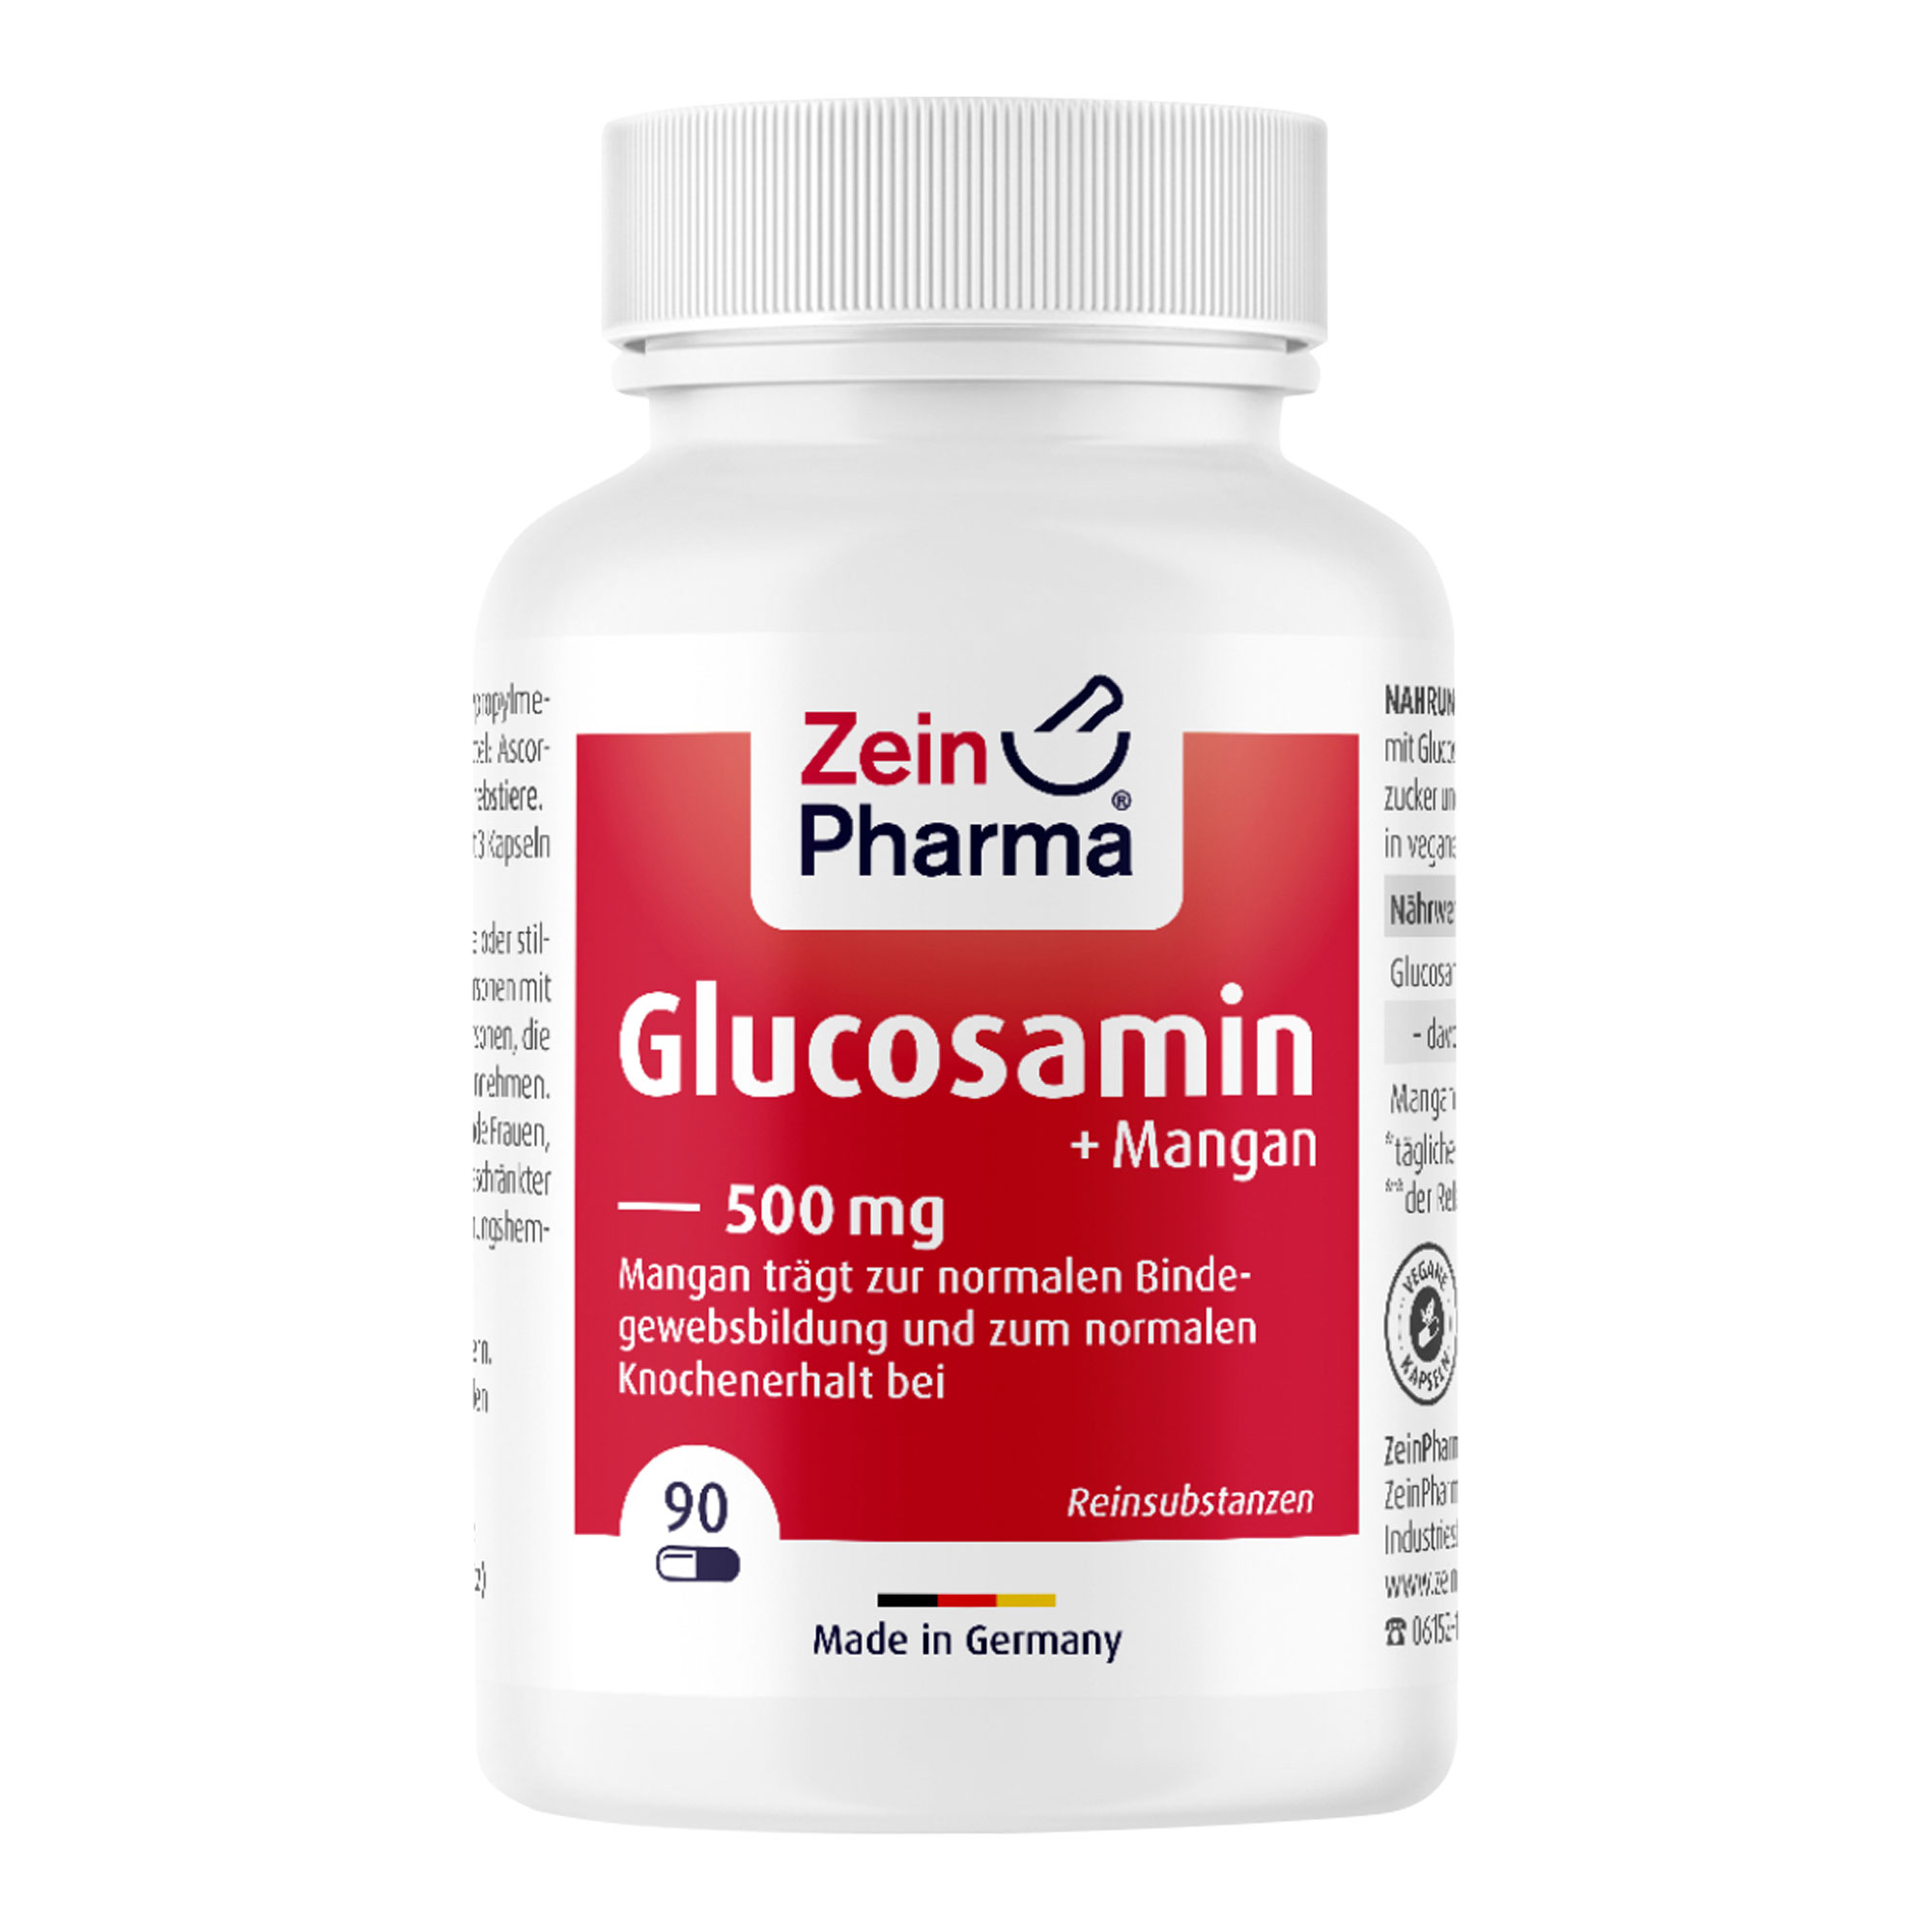 Nahrungsergänzungsmittel mit Glucosamin. Zur Unterstützung einer normalen Bindegewebsbildung und Erhaltung von normalen Knochen.